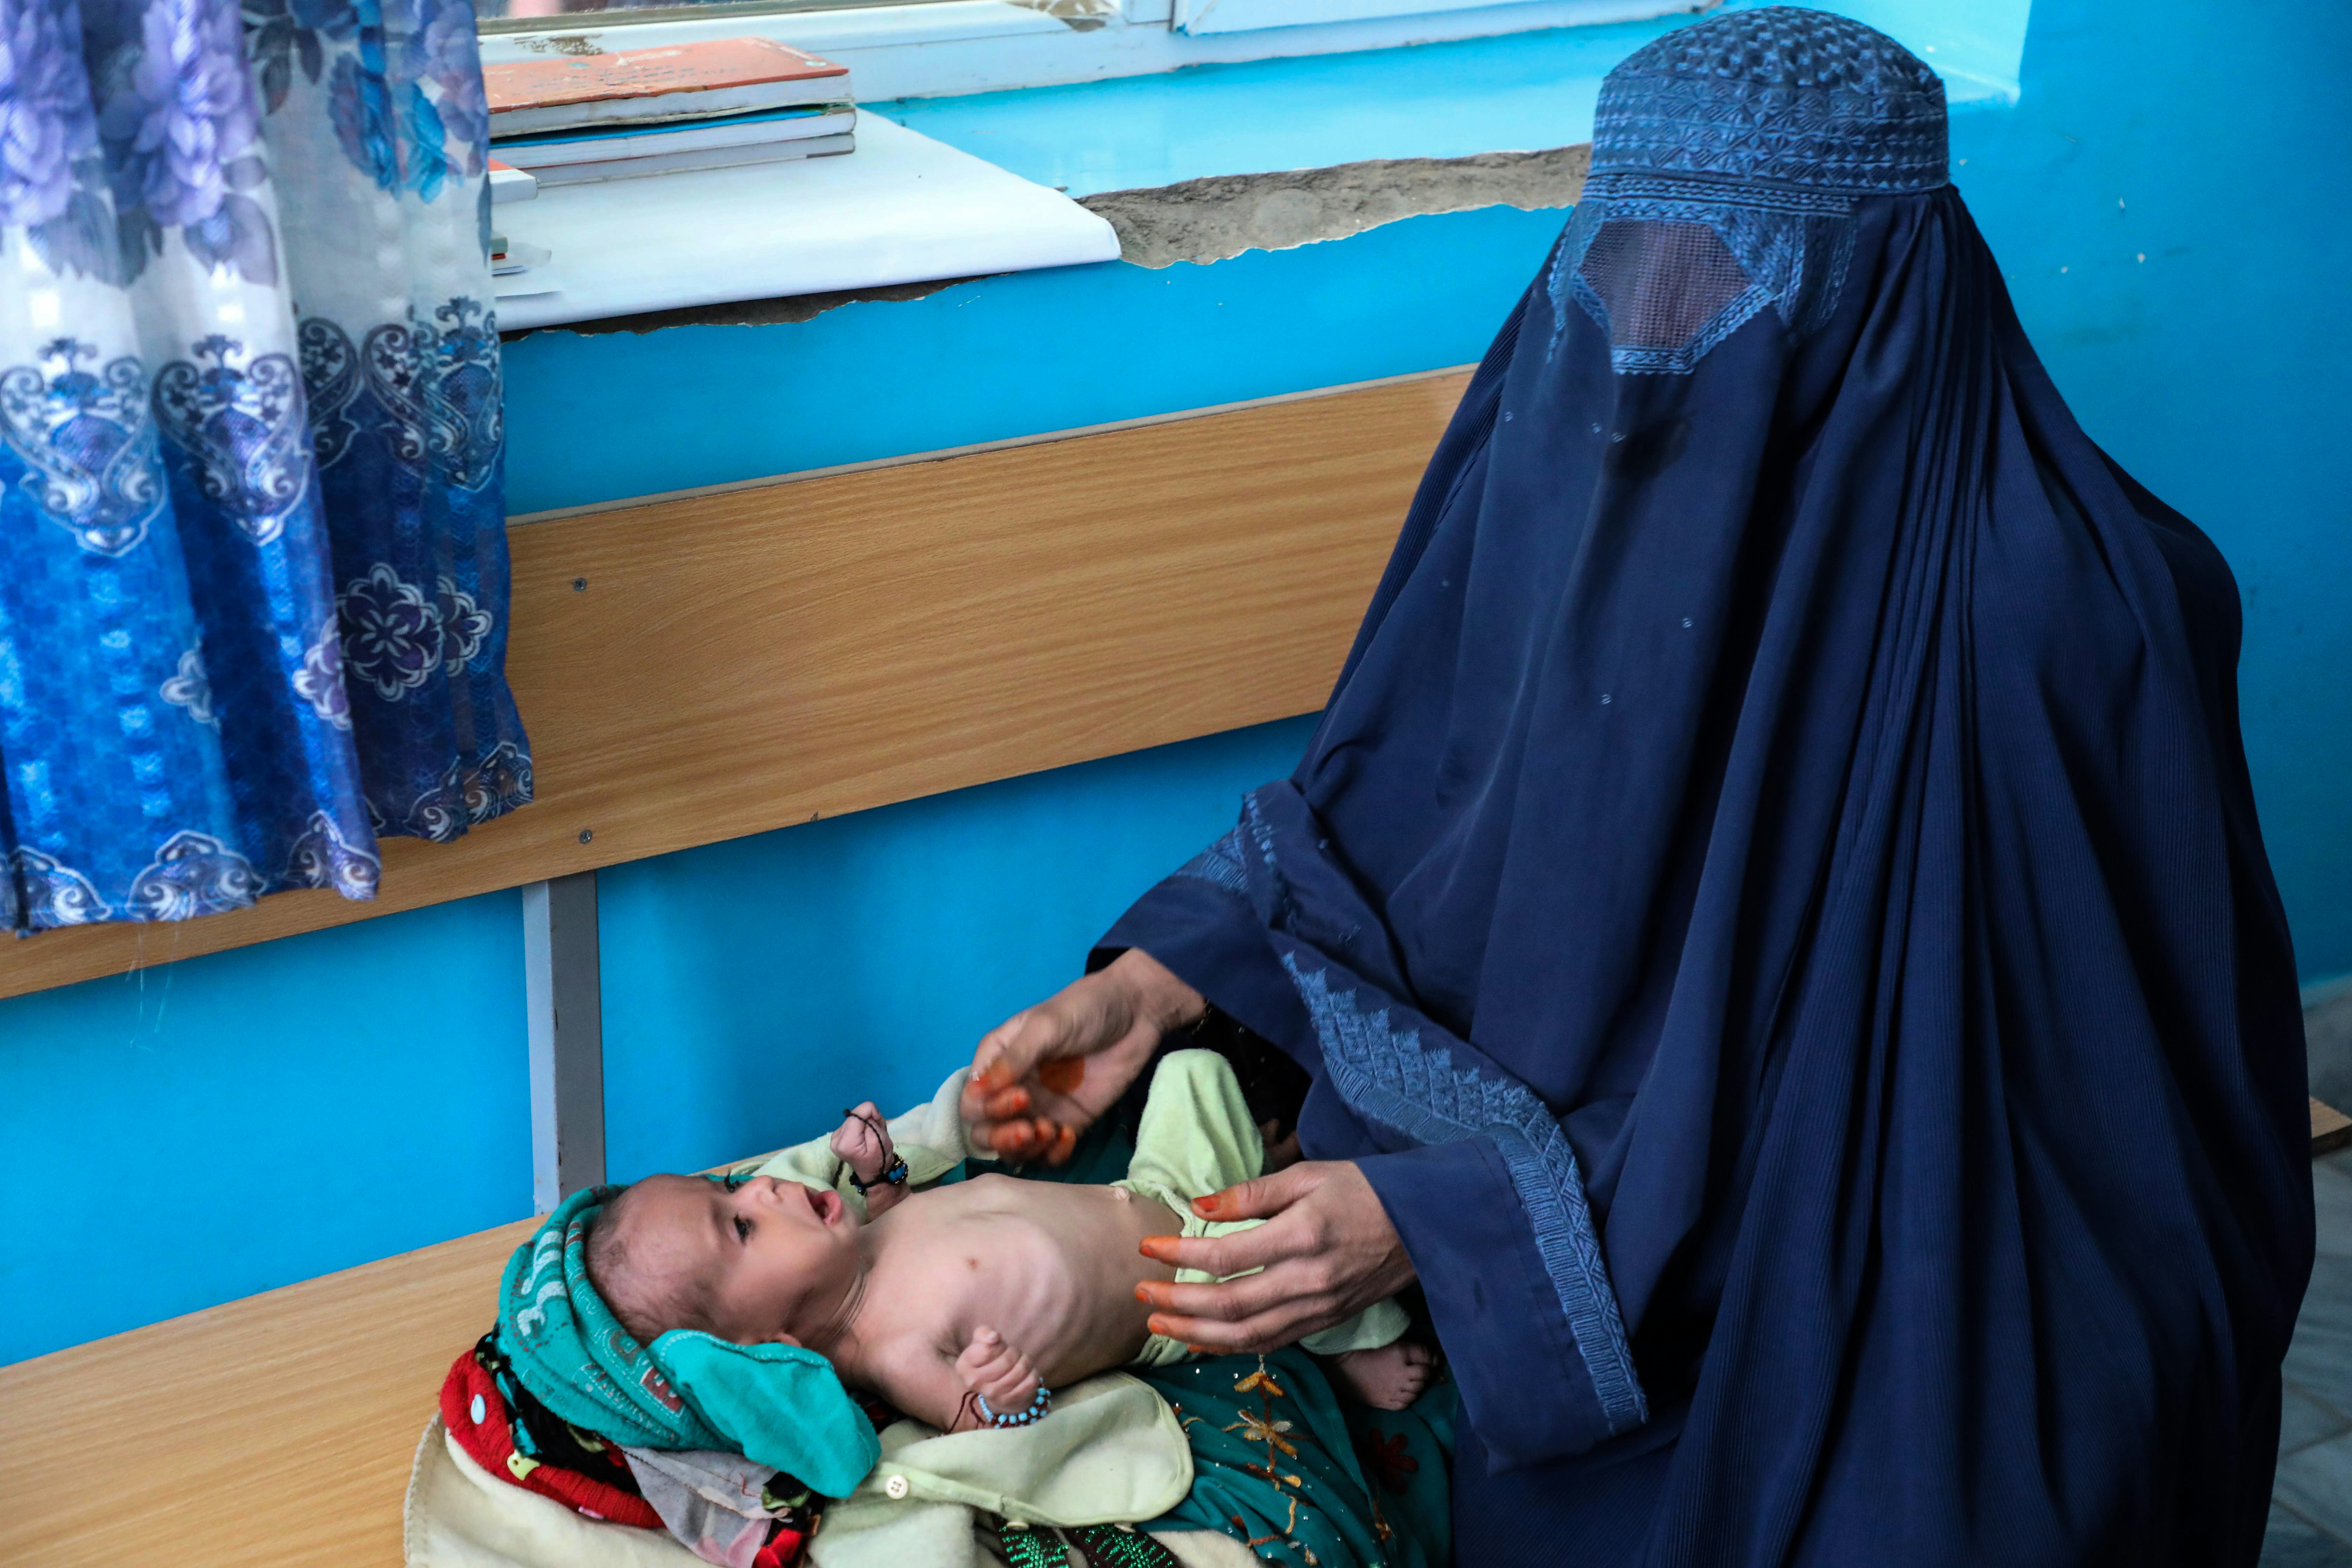 КАБУЛ, АФГАНИСТАН - 16 ЯНВАРЯ: Афганские дети, страдающие от недоедания, в больнице в Кабуле, Афганистан, 16 января 2022 года. В Афганистане дети не могут стоять на ногах, несмотря на свой возраст;  причина просто голод.  Уровень недоедания в стране стремительно растет.  Дети, страдающие гипотрофией, которая определяется как постоянная нехватка питательных элементов, необходимых организму человека, лишены своего основного источника питания новорожденных — грудного молока.  Матерей, не имеющих даже доступа к жизненно важным основным продуктам питания, в короткие сроки отлучают от груди.  Отсутствие необходимых пищевых добавок вызывает видимое замедление развития у новорожденных и детей.  (Фото Сайеда Ходайберди Садата/Агентство Анадолу через Getty Images)